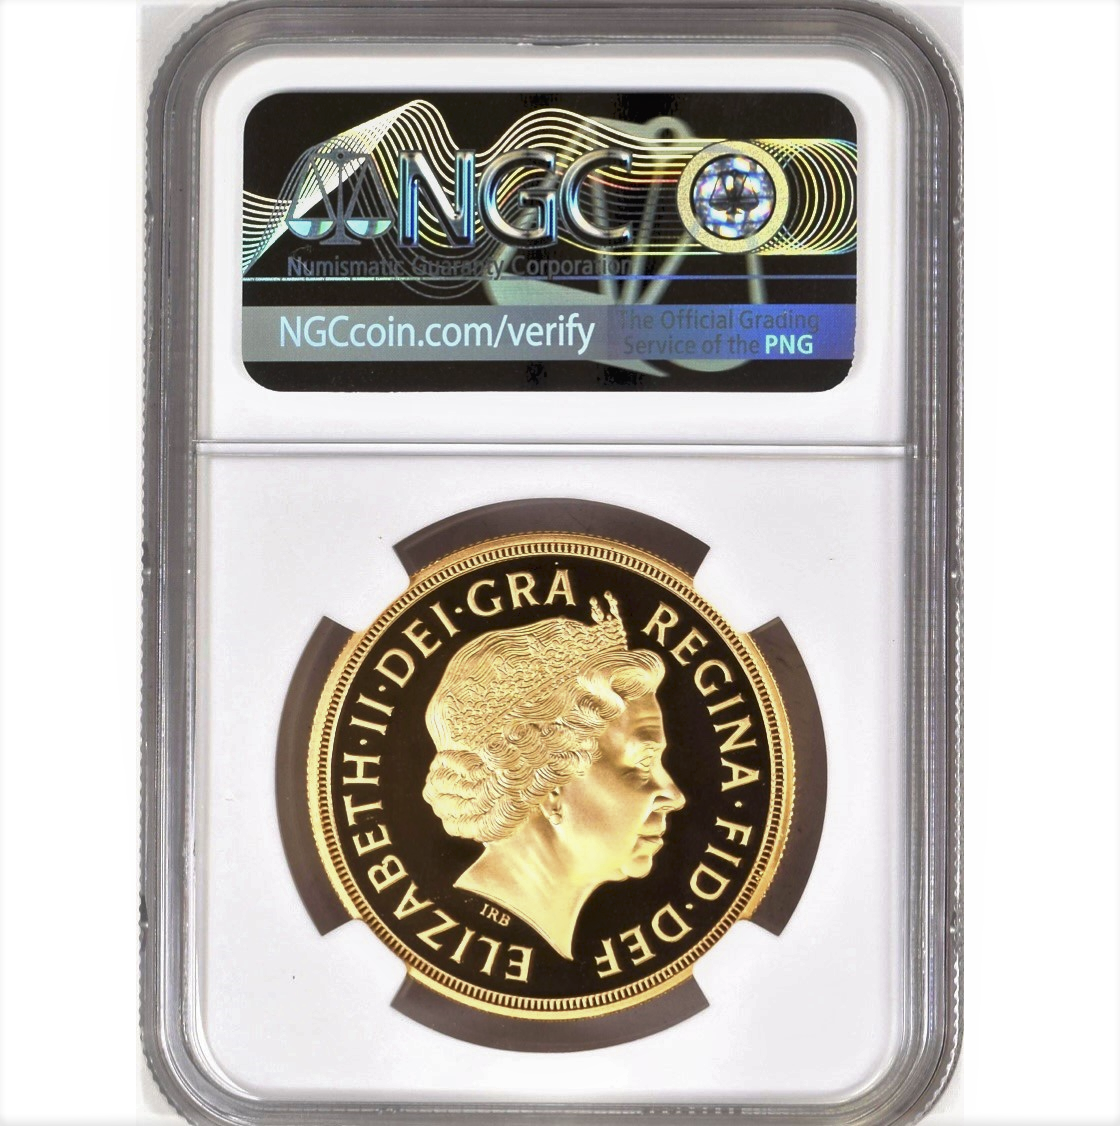 2002 イギリス 5ポンド 金貨 ゴールデンジュビリー 即位50周年記念 NGC ...